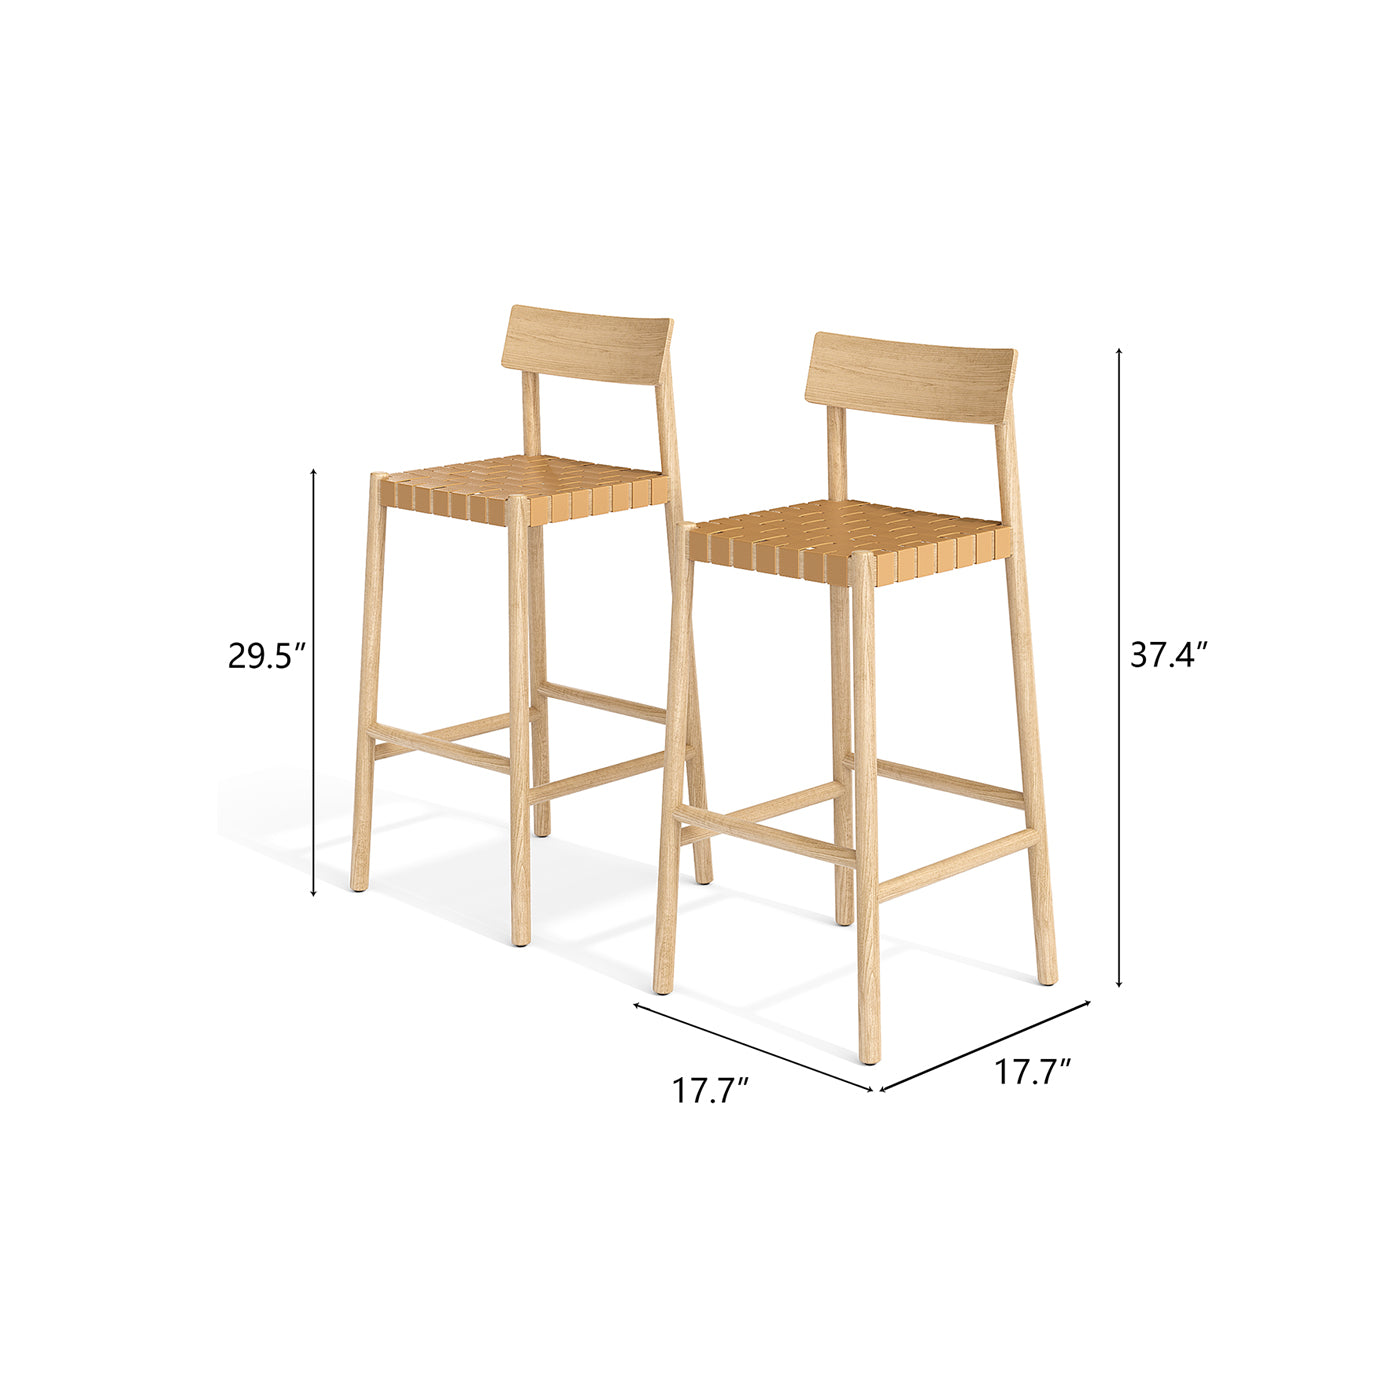 Modern Light Wood Wood Rectangular Chairs